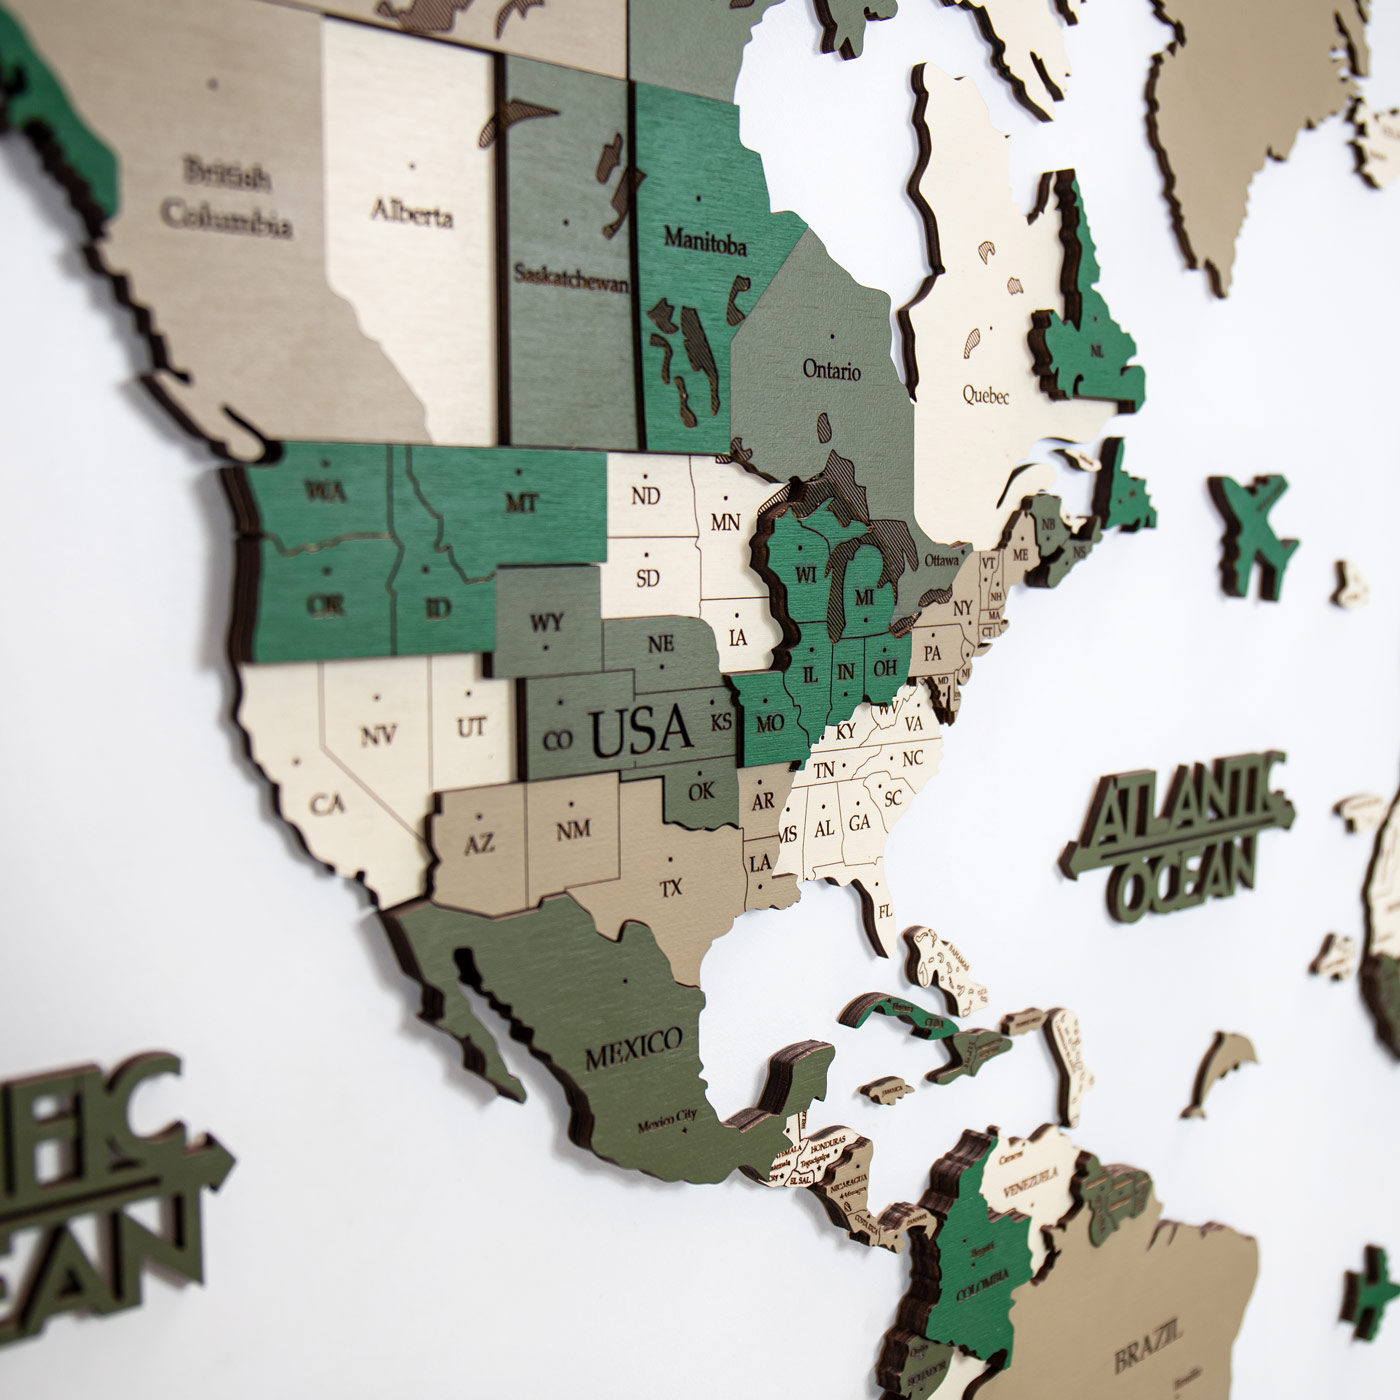 Τρισδιάστατος ξύλινος παγκόσμιος χάρτης. Ξύλινη διακόσμηση τοίχου. Χρώματα καμουφλάζ από την Ksilart